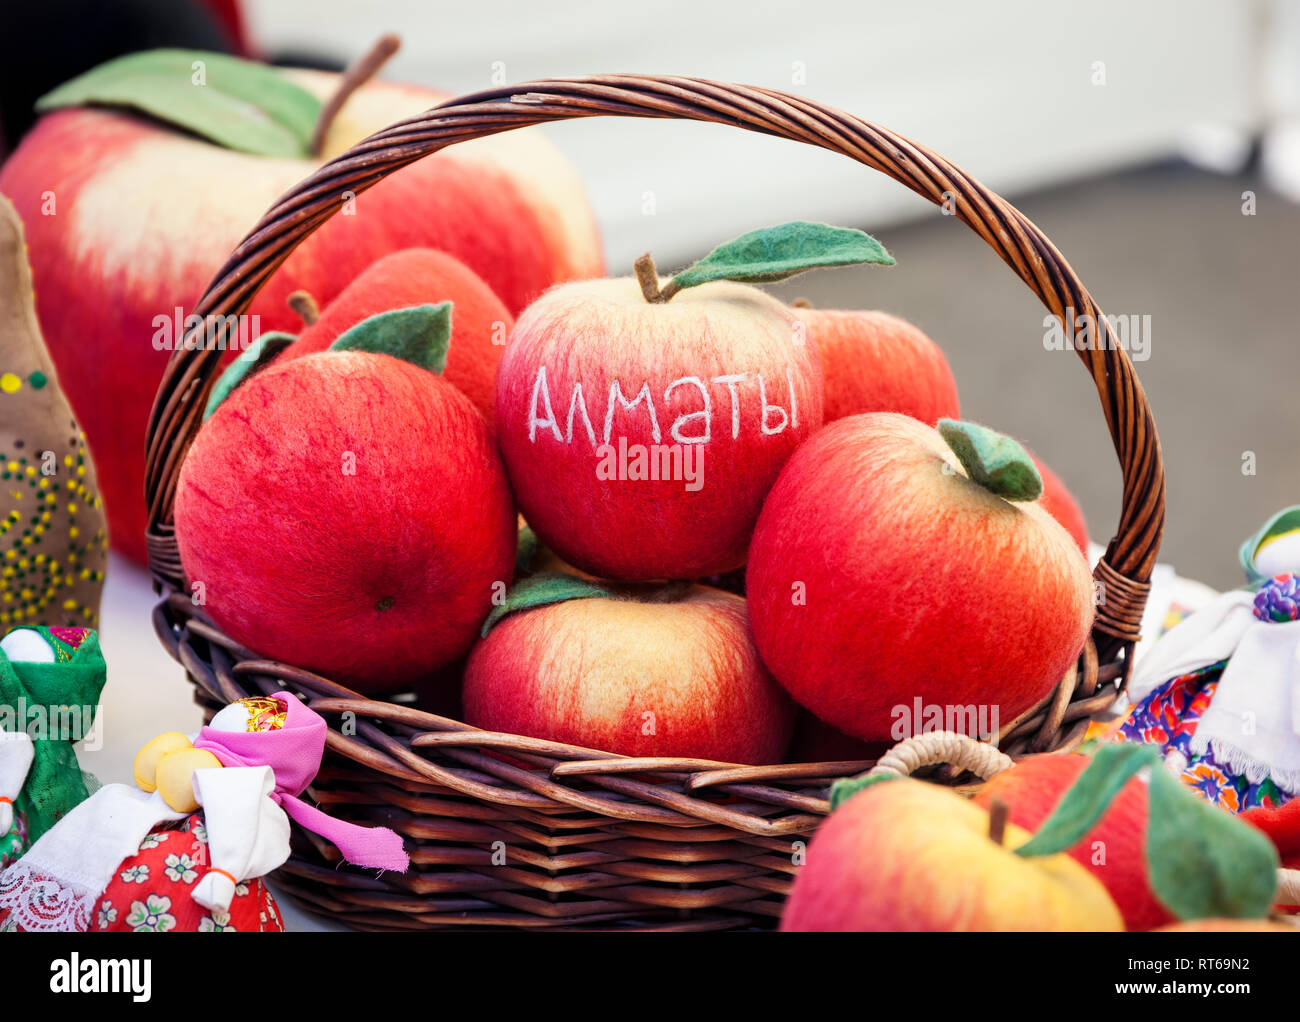 Red apple dal feltro con testo città Almaty al mercato in Kazakistan Foto Stock